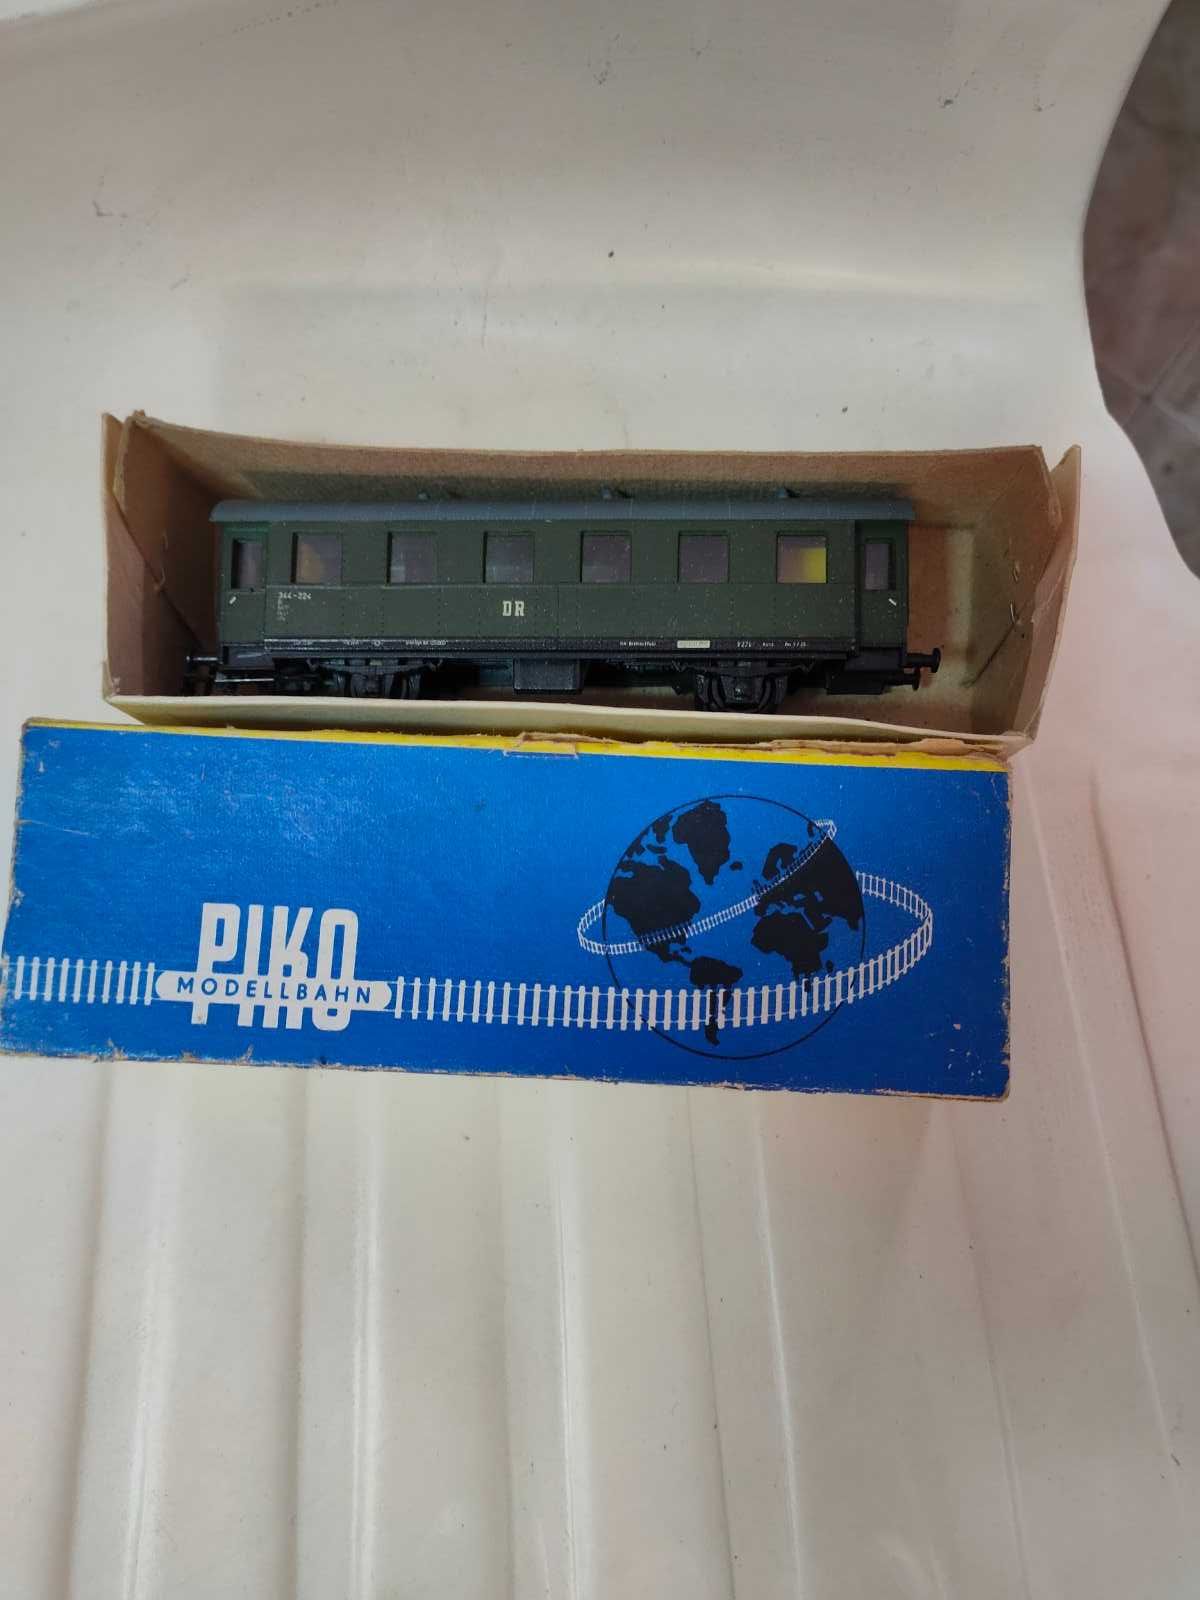 Немски модели на влакове (влакчета) Piko и Schicht, мащаб 1:87 (HO)